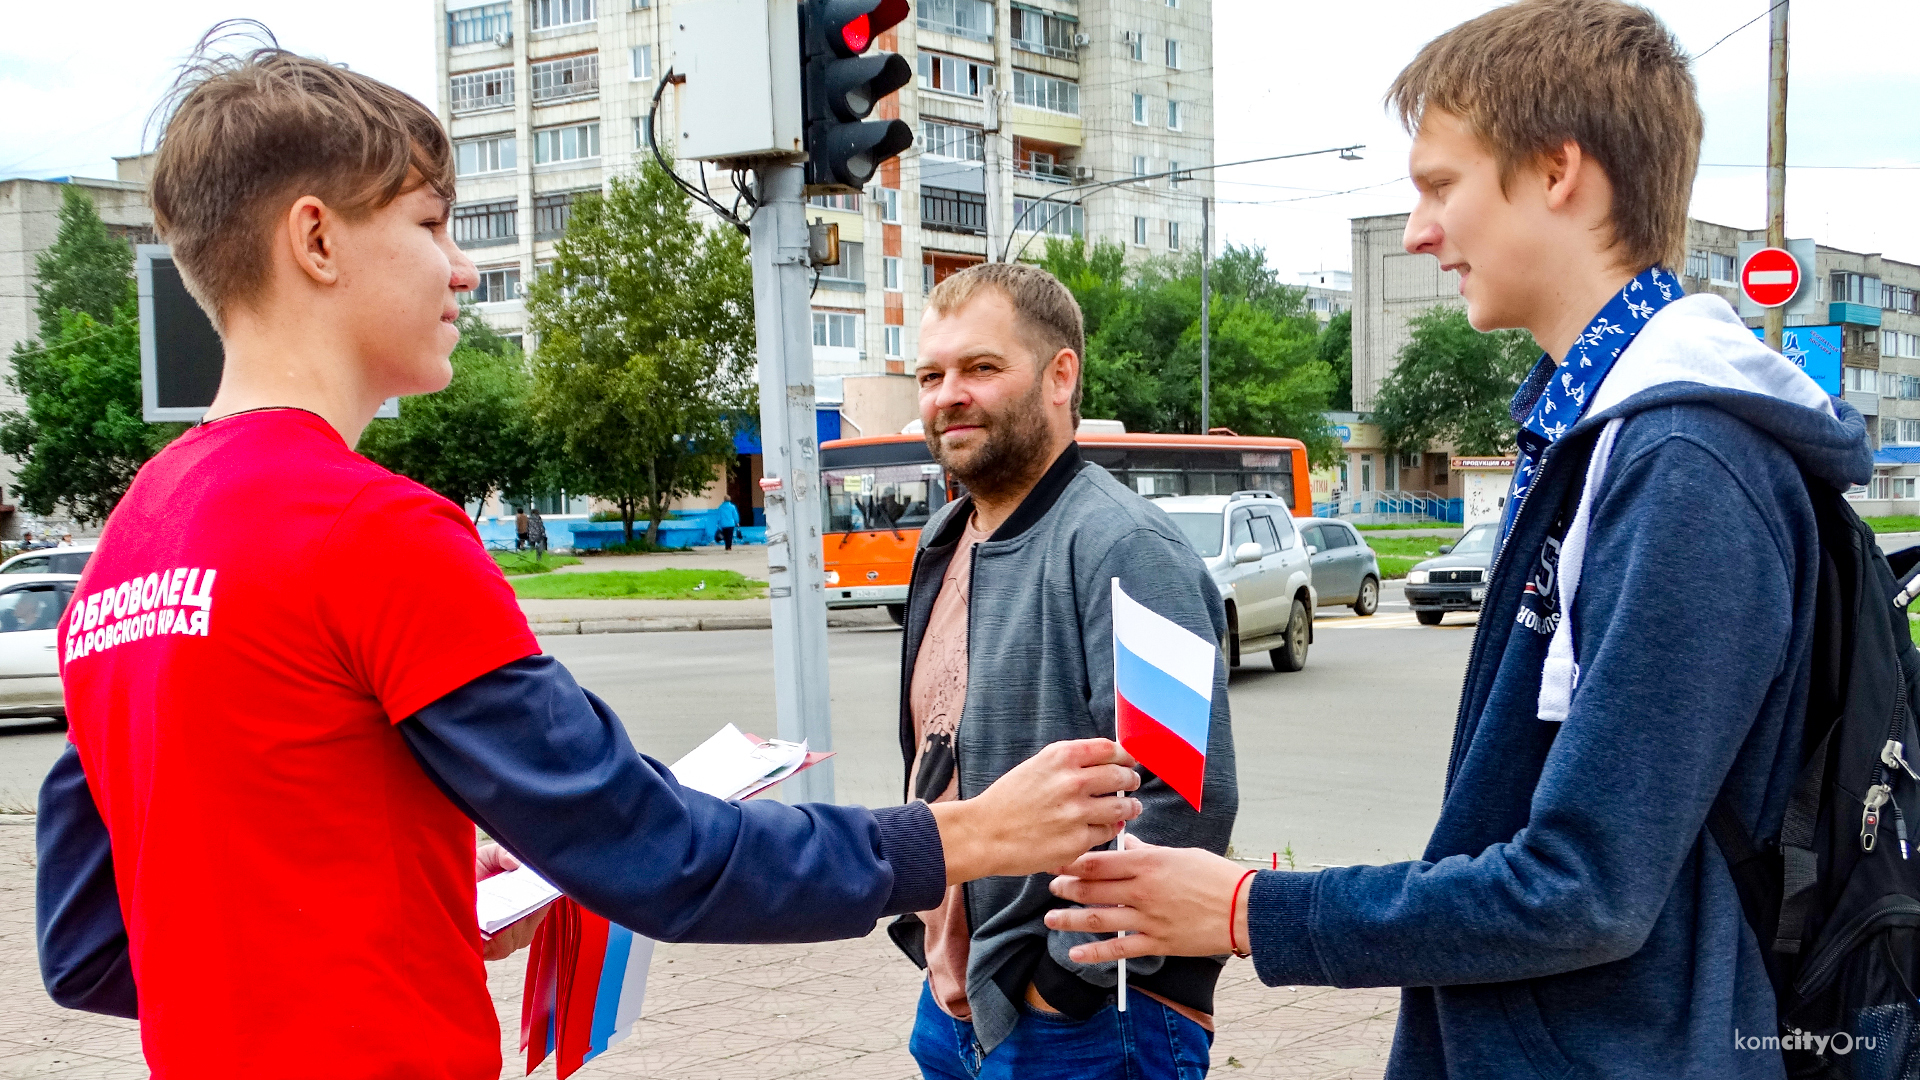 Историю триколора вспомнили жители Комсомольска-на-Амуре на флешмобе ко Дню российского флага 